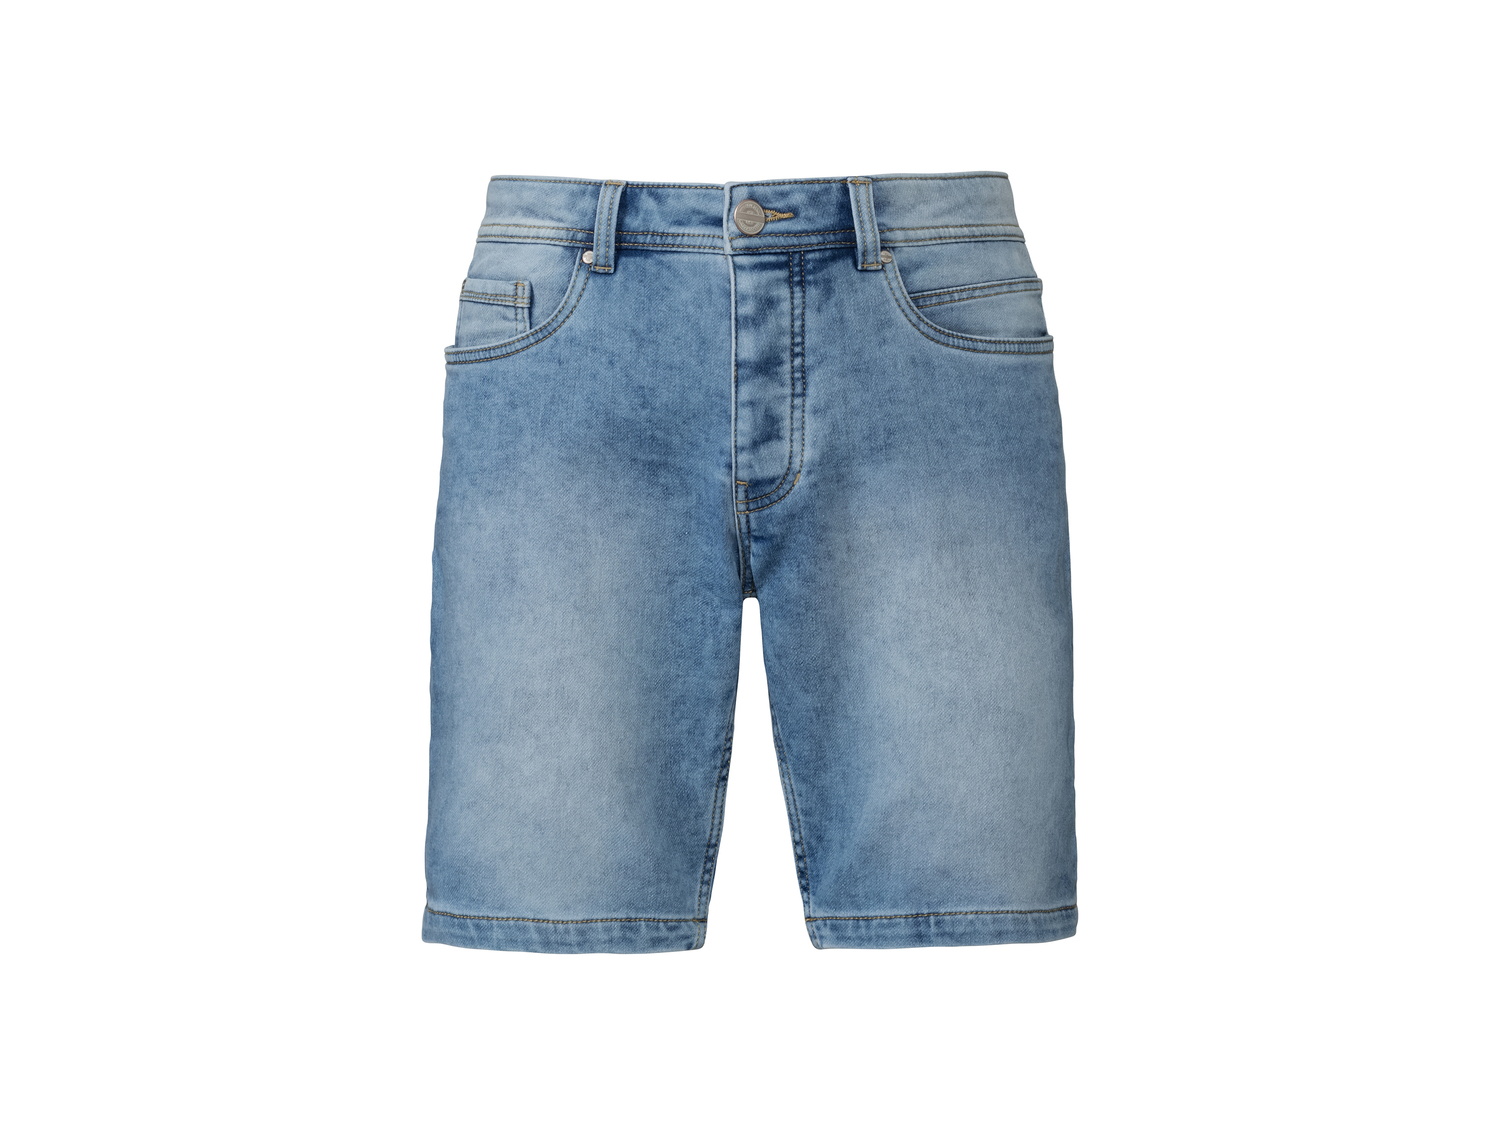 Bermuda in jeans da uomo Livergy, prezzo 7.99 &#8364; 
Misure: 46-56
Taglie ...